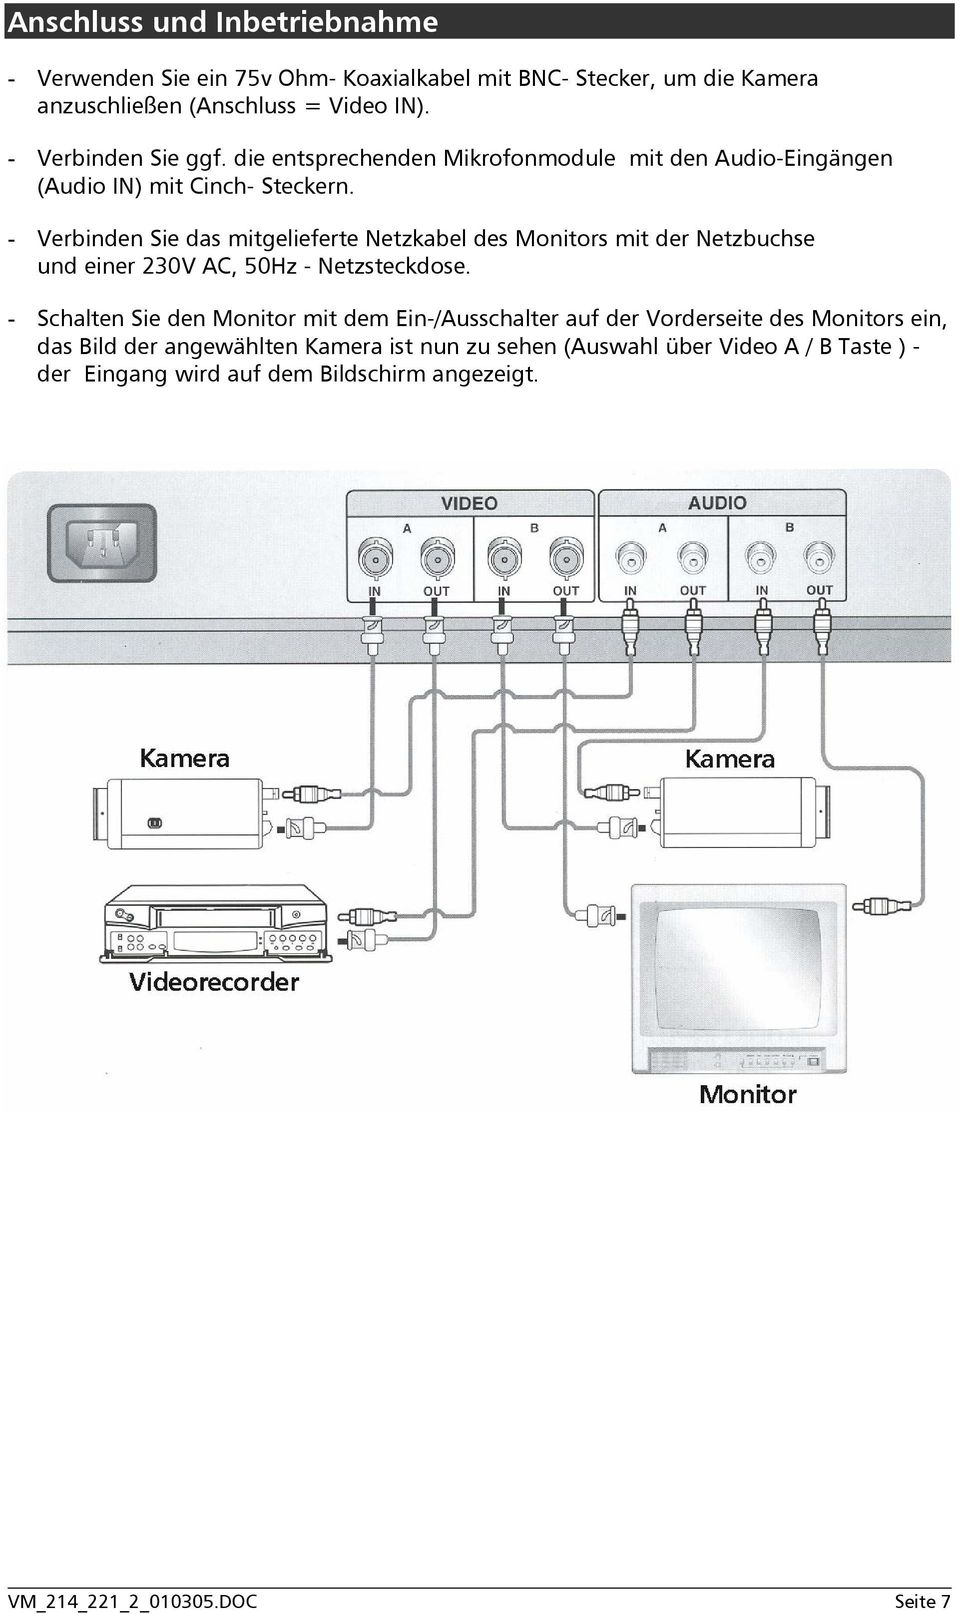 - Verbinden Sie das mitgelieferte Netzkabel des Monitors mit der Netzbuchse und einer 230V AC, 50Hz - Netzsteckdose.